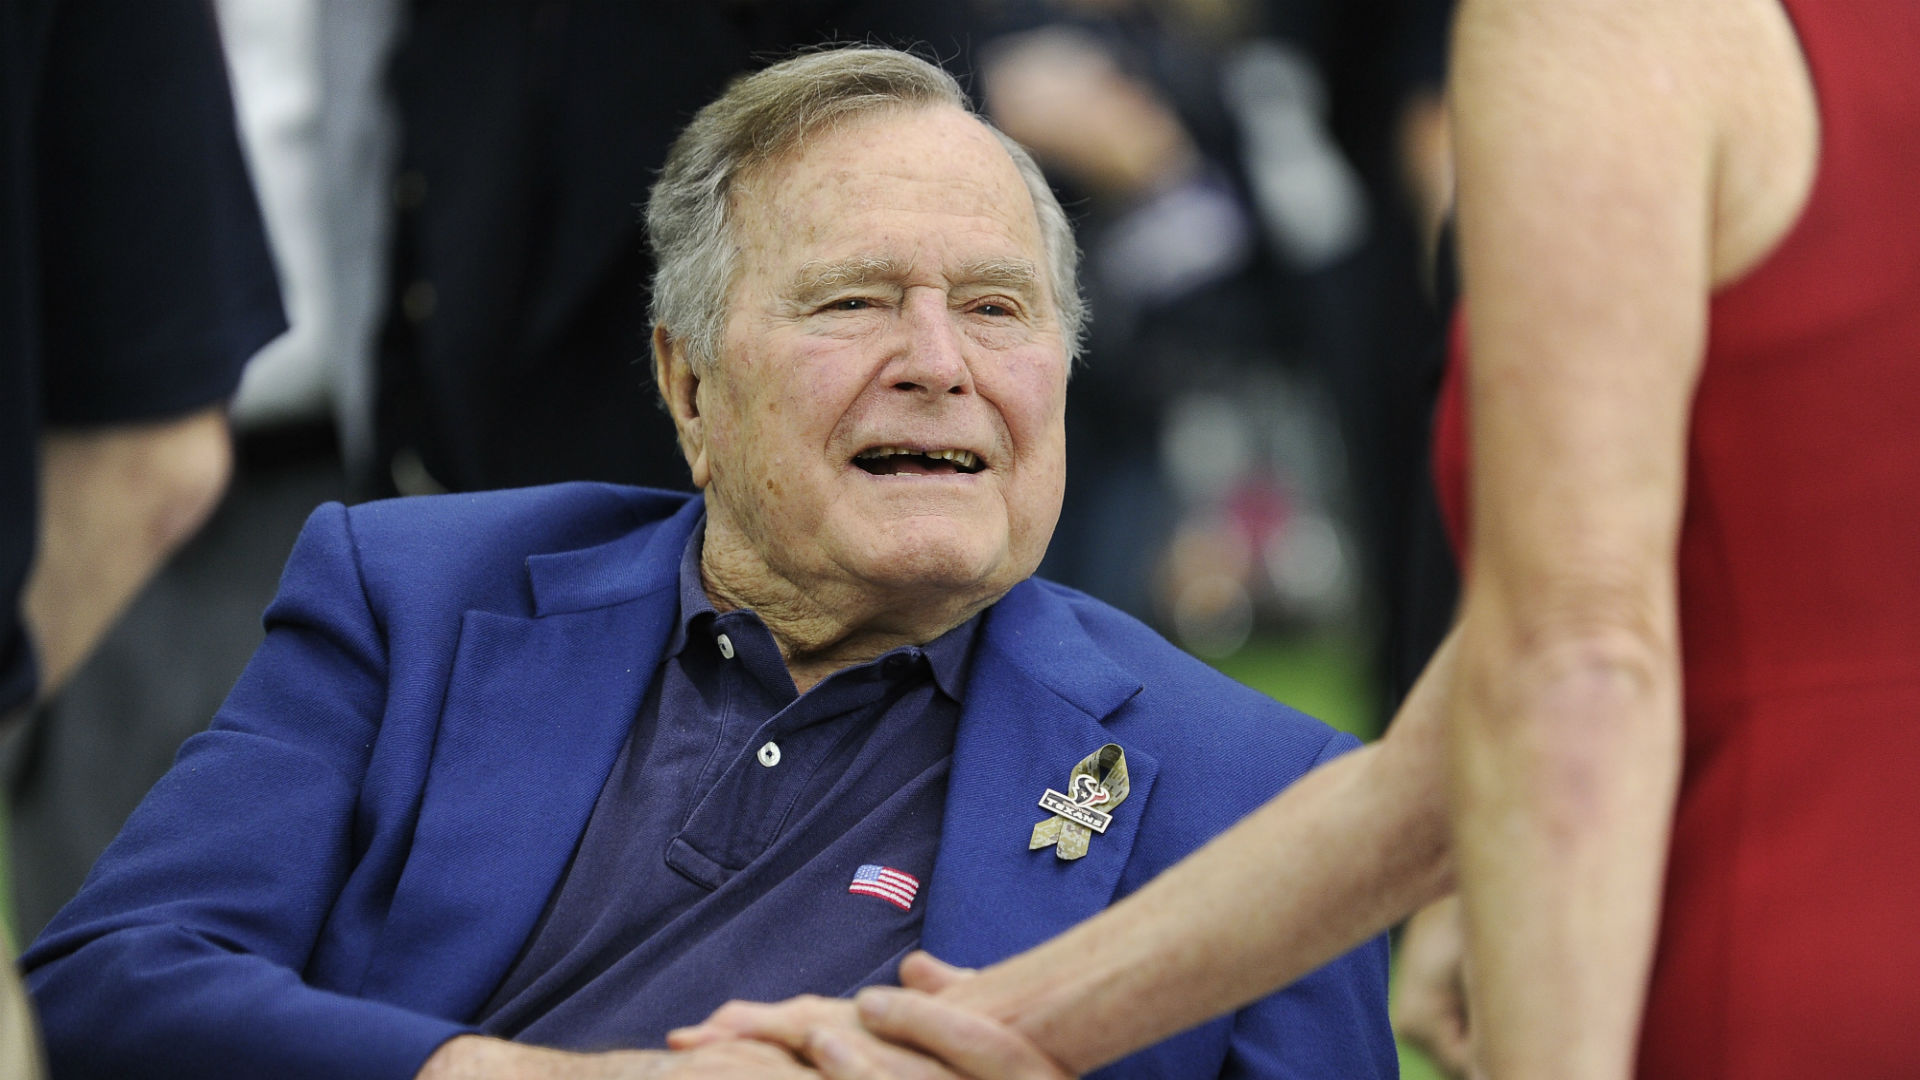 El expresidente Bush padre vuelve a ingresar en un hospital por leve neumonía